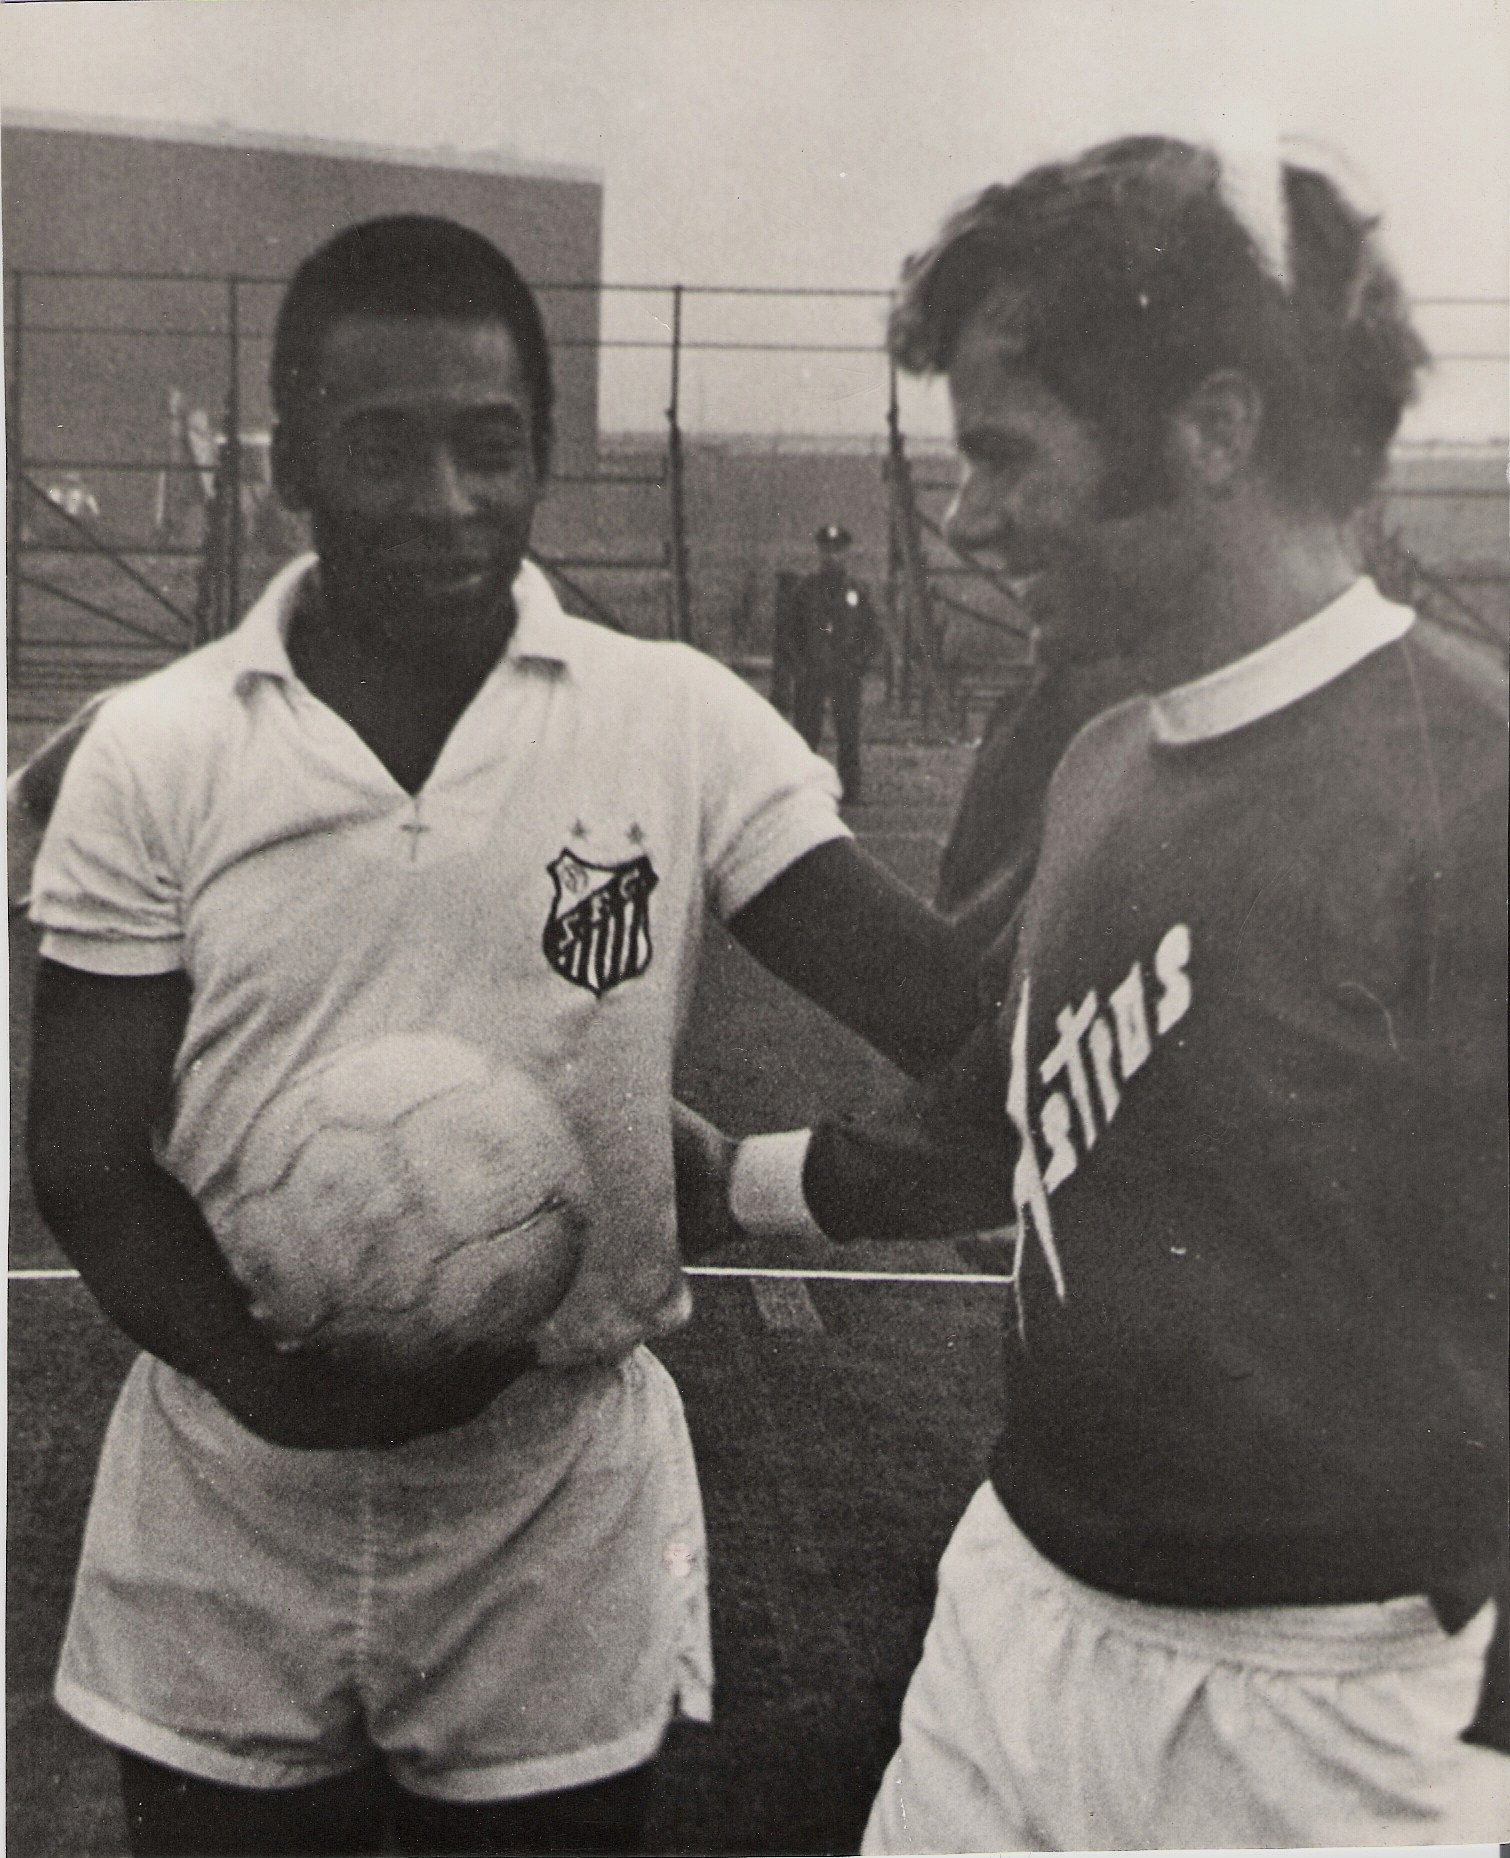 “Welke voetballer uit Nederland kan zeggen dat hij tegen Pele heeft gespeeld.”